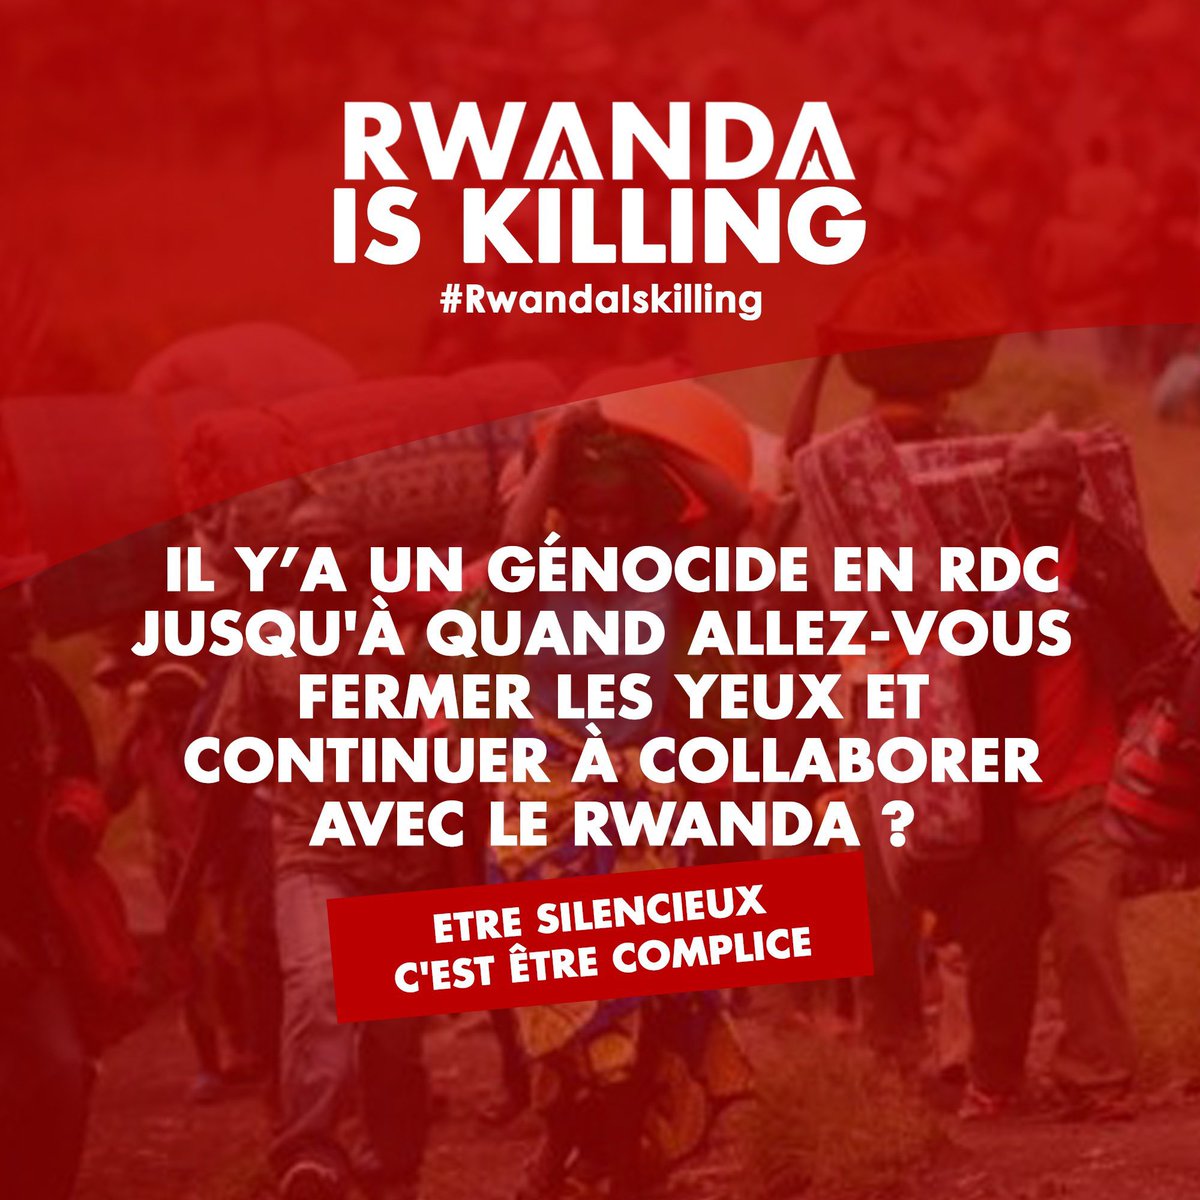 @ActualiteBarca #RwandaIsKilling
#StopKagameNow